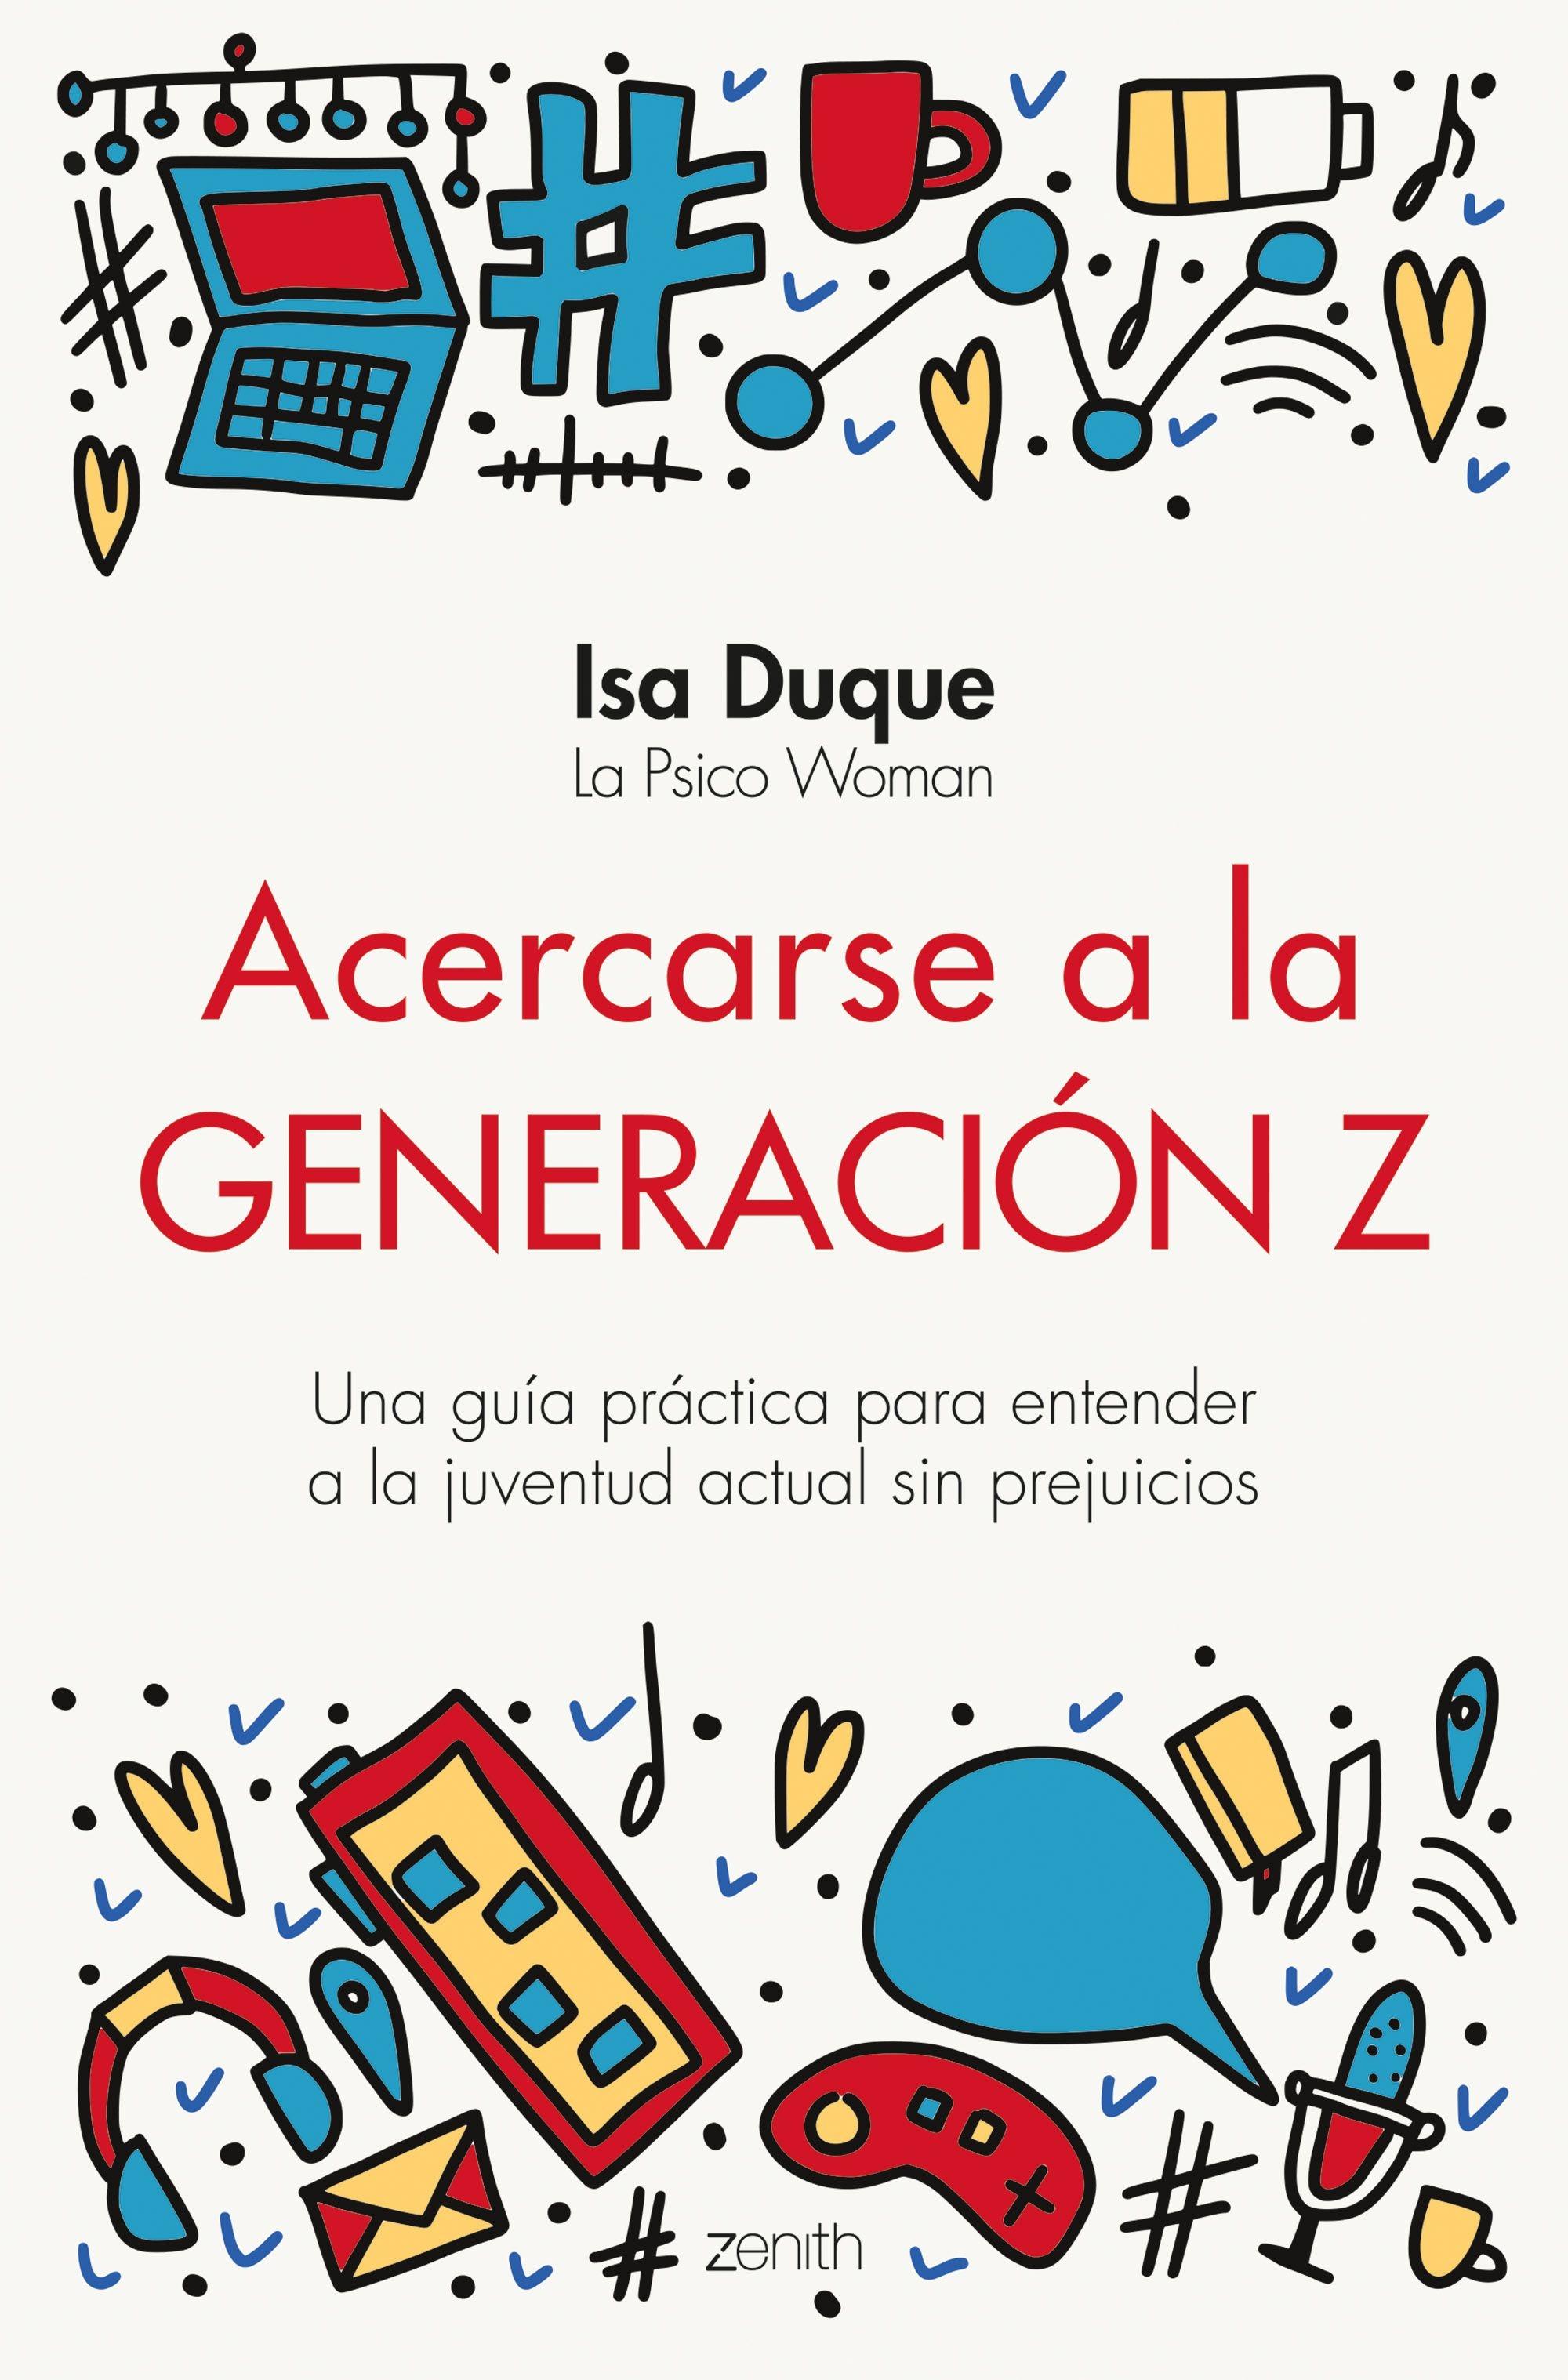 Acercarse a la Generación Z "Una Guía Práctica para Entender a la Juventud Actual sin Prejuicios"